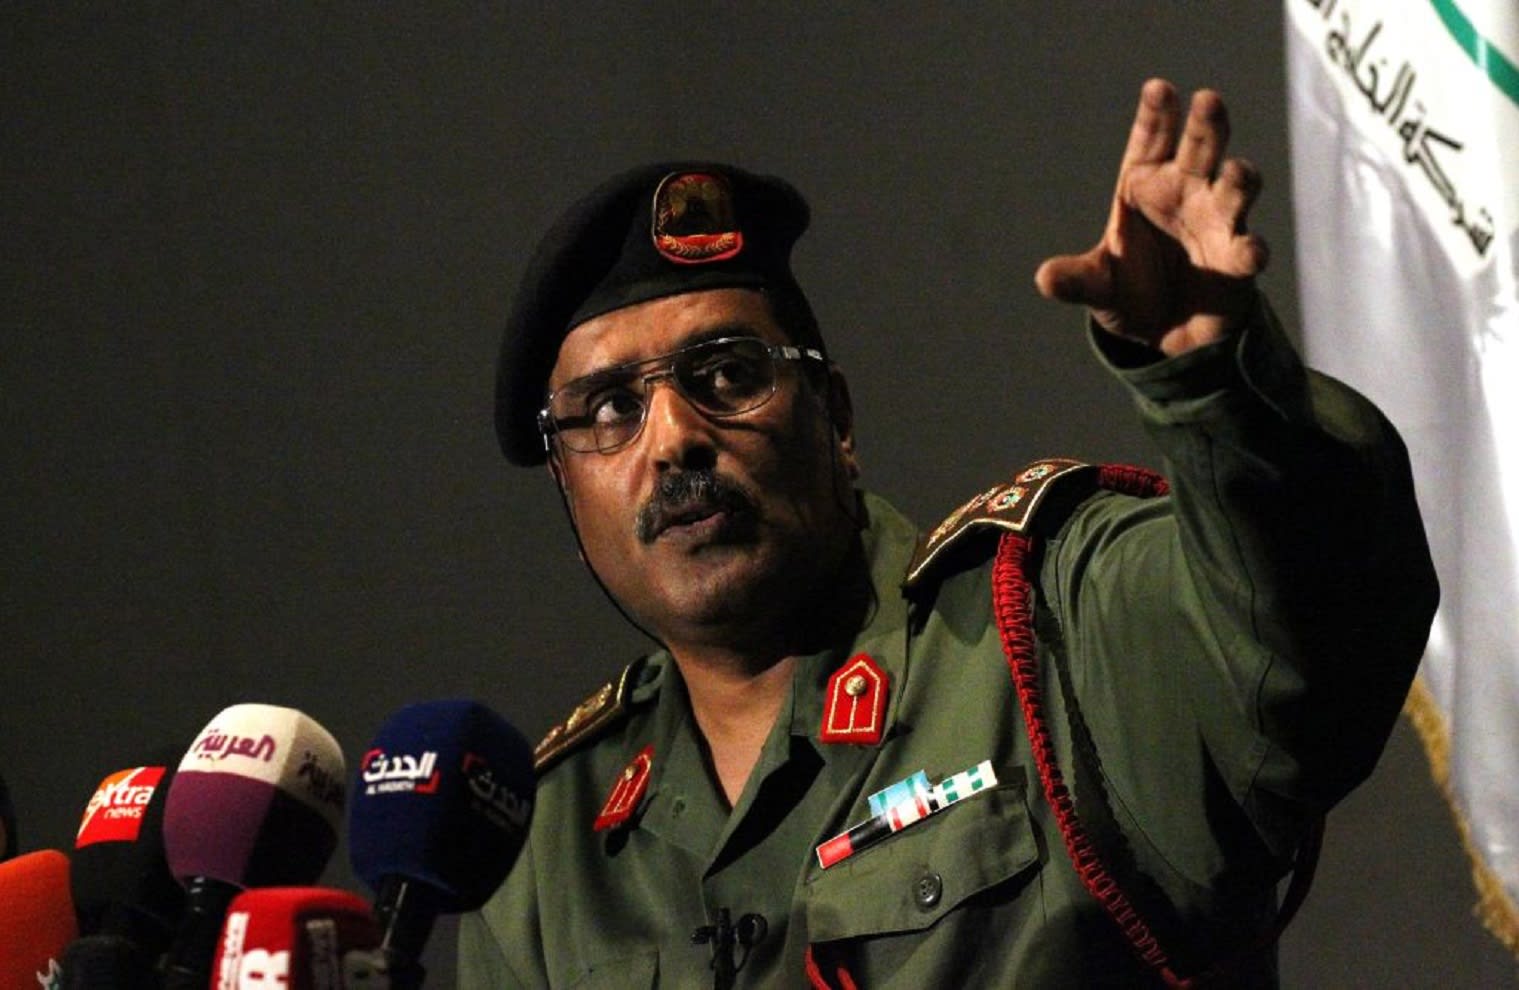 متحدث الجيش الليبي يكشف تفاصيل القبض على هشام عشماوي: "هدية" لمصر